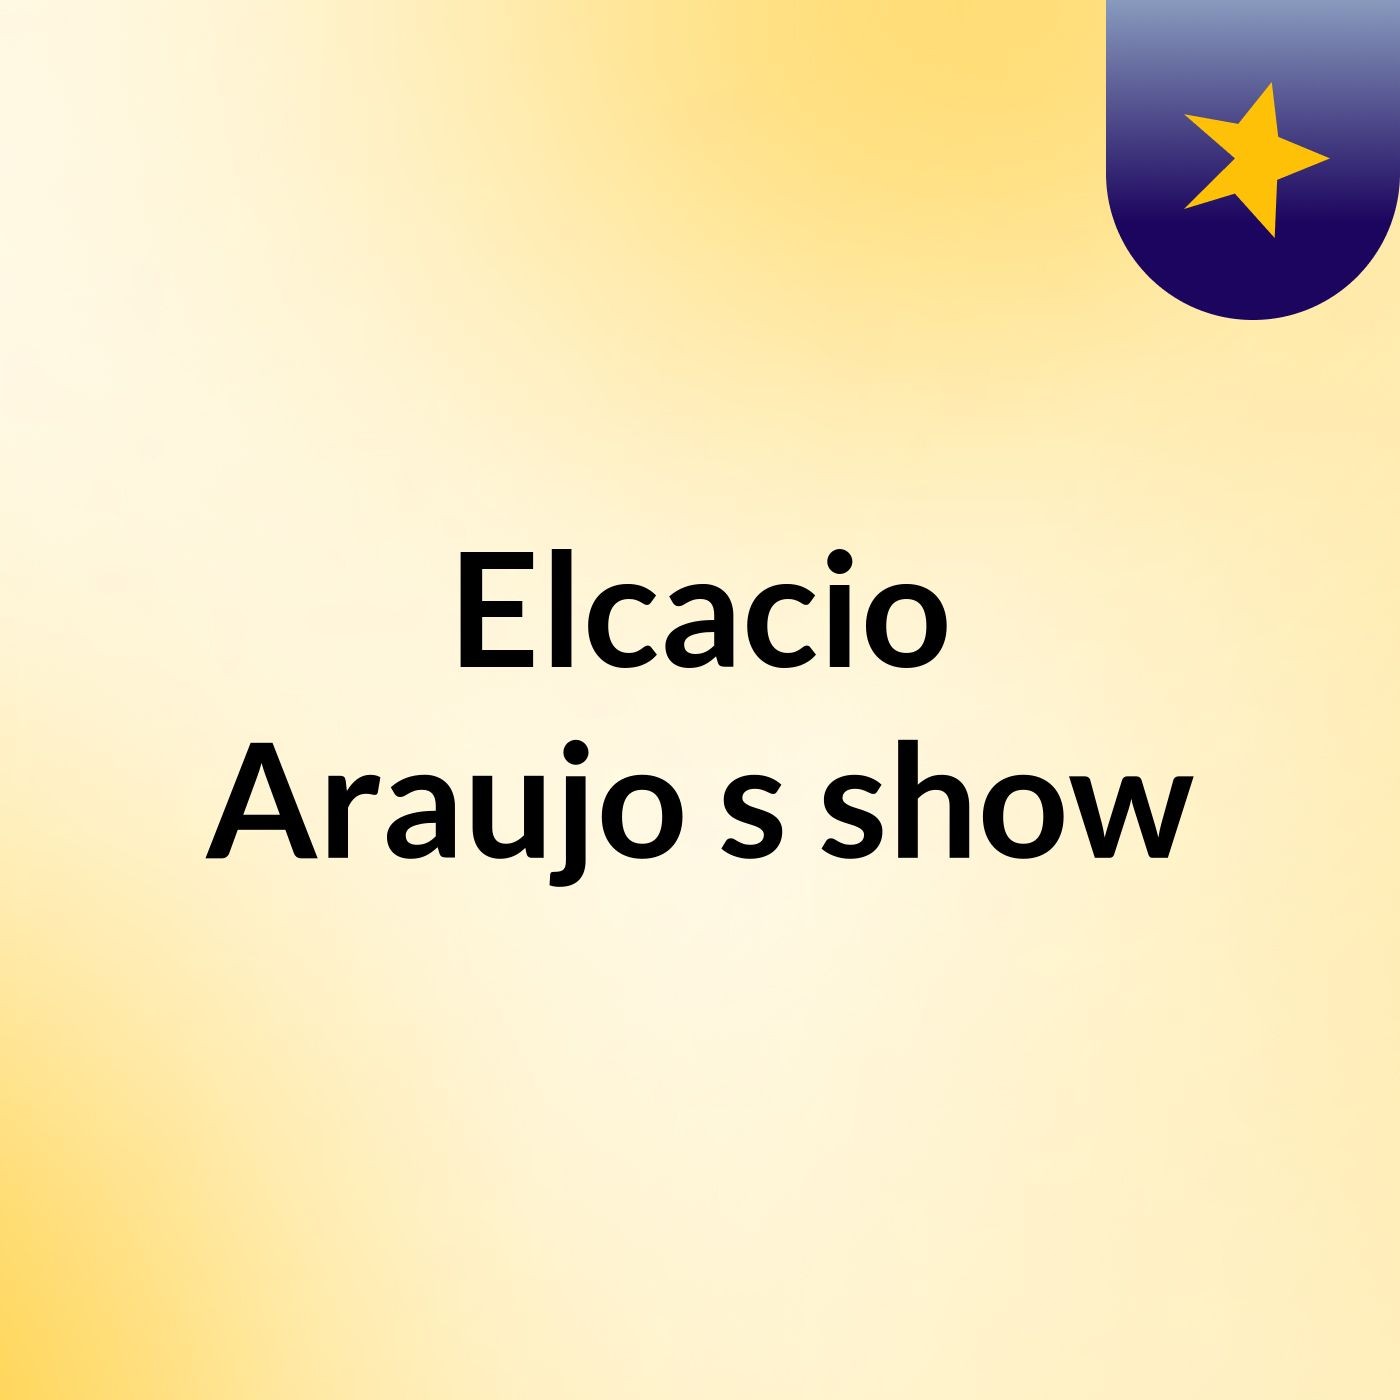 Elcacio Araujo's show